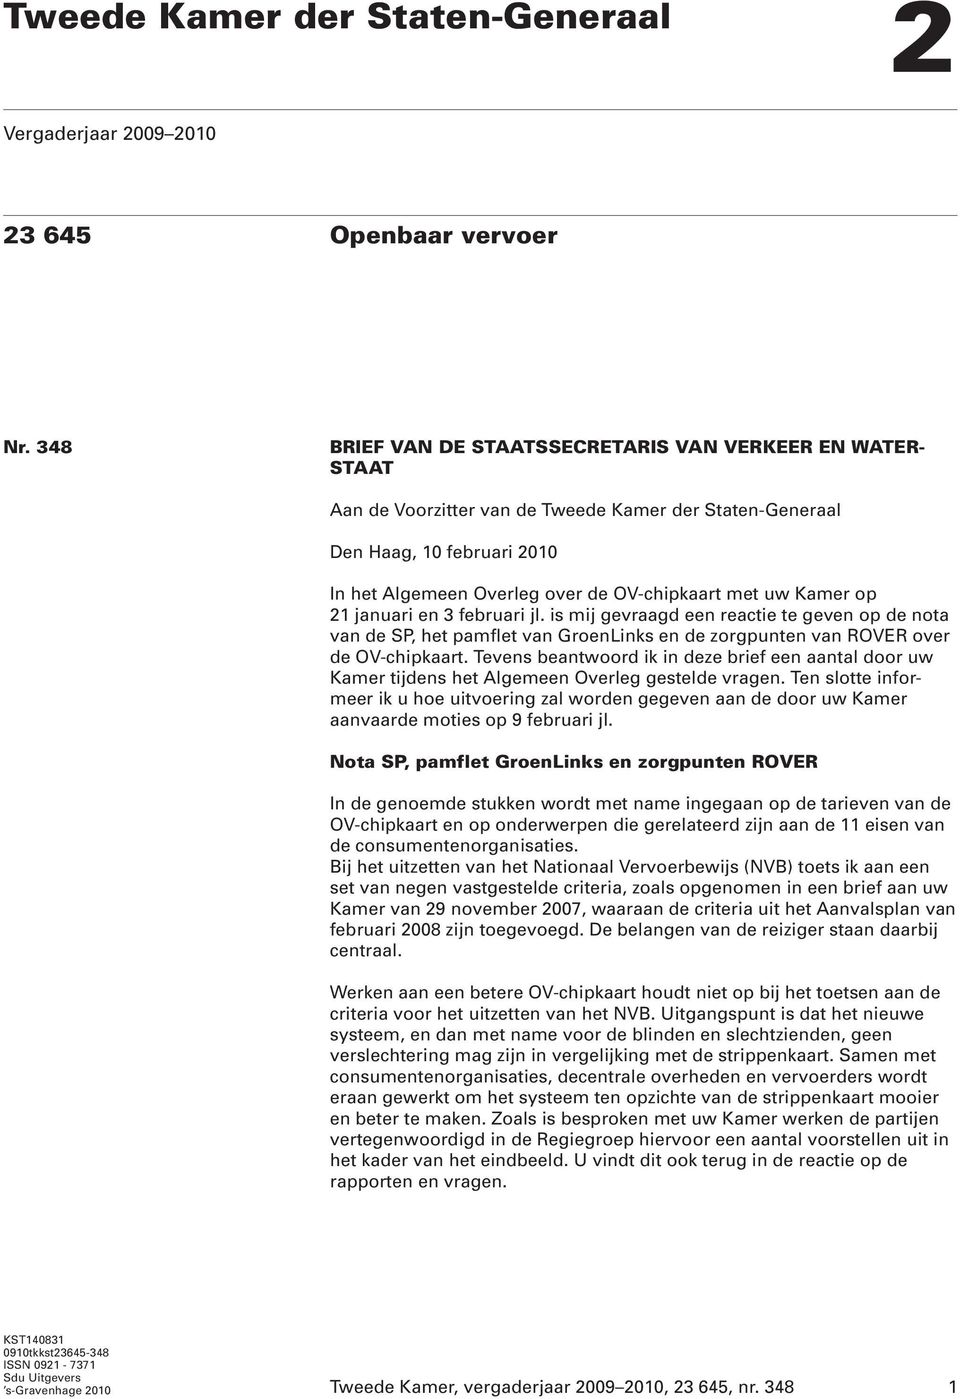 Kamer op 21 januari en 3 februari jl. is mij gevraagd een reactie te geven op de nota van de SP, het pamflet van GroenLinks en de zorgpunten van ROVER over de OV-chipkaart.